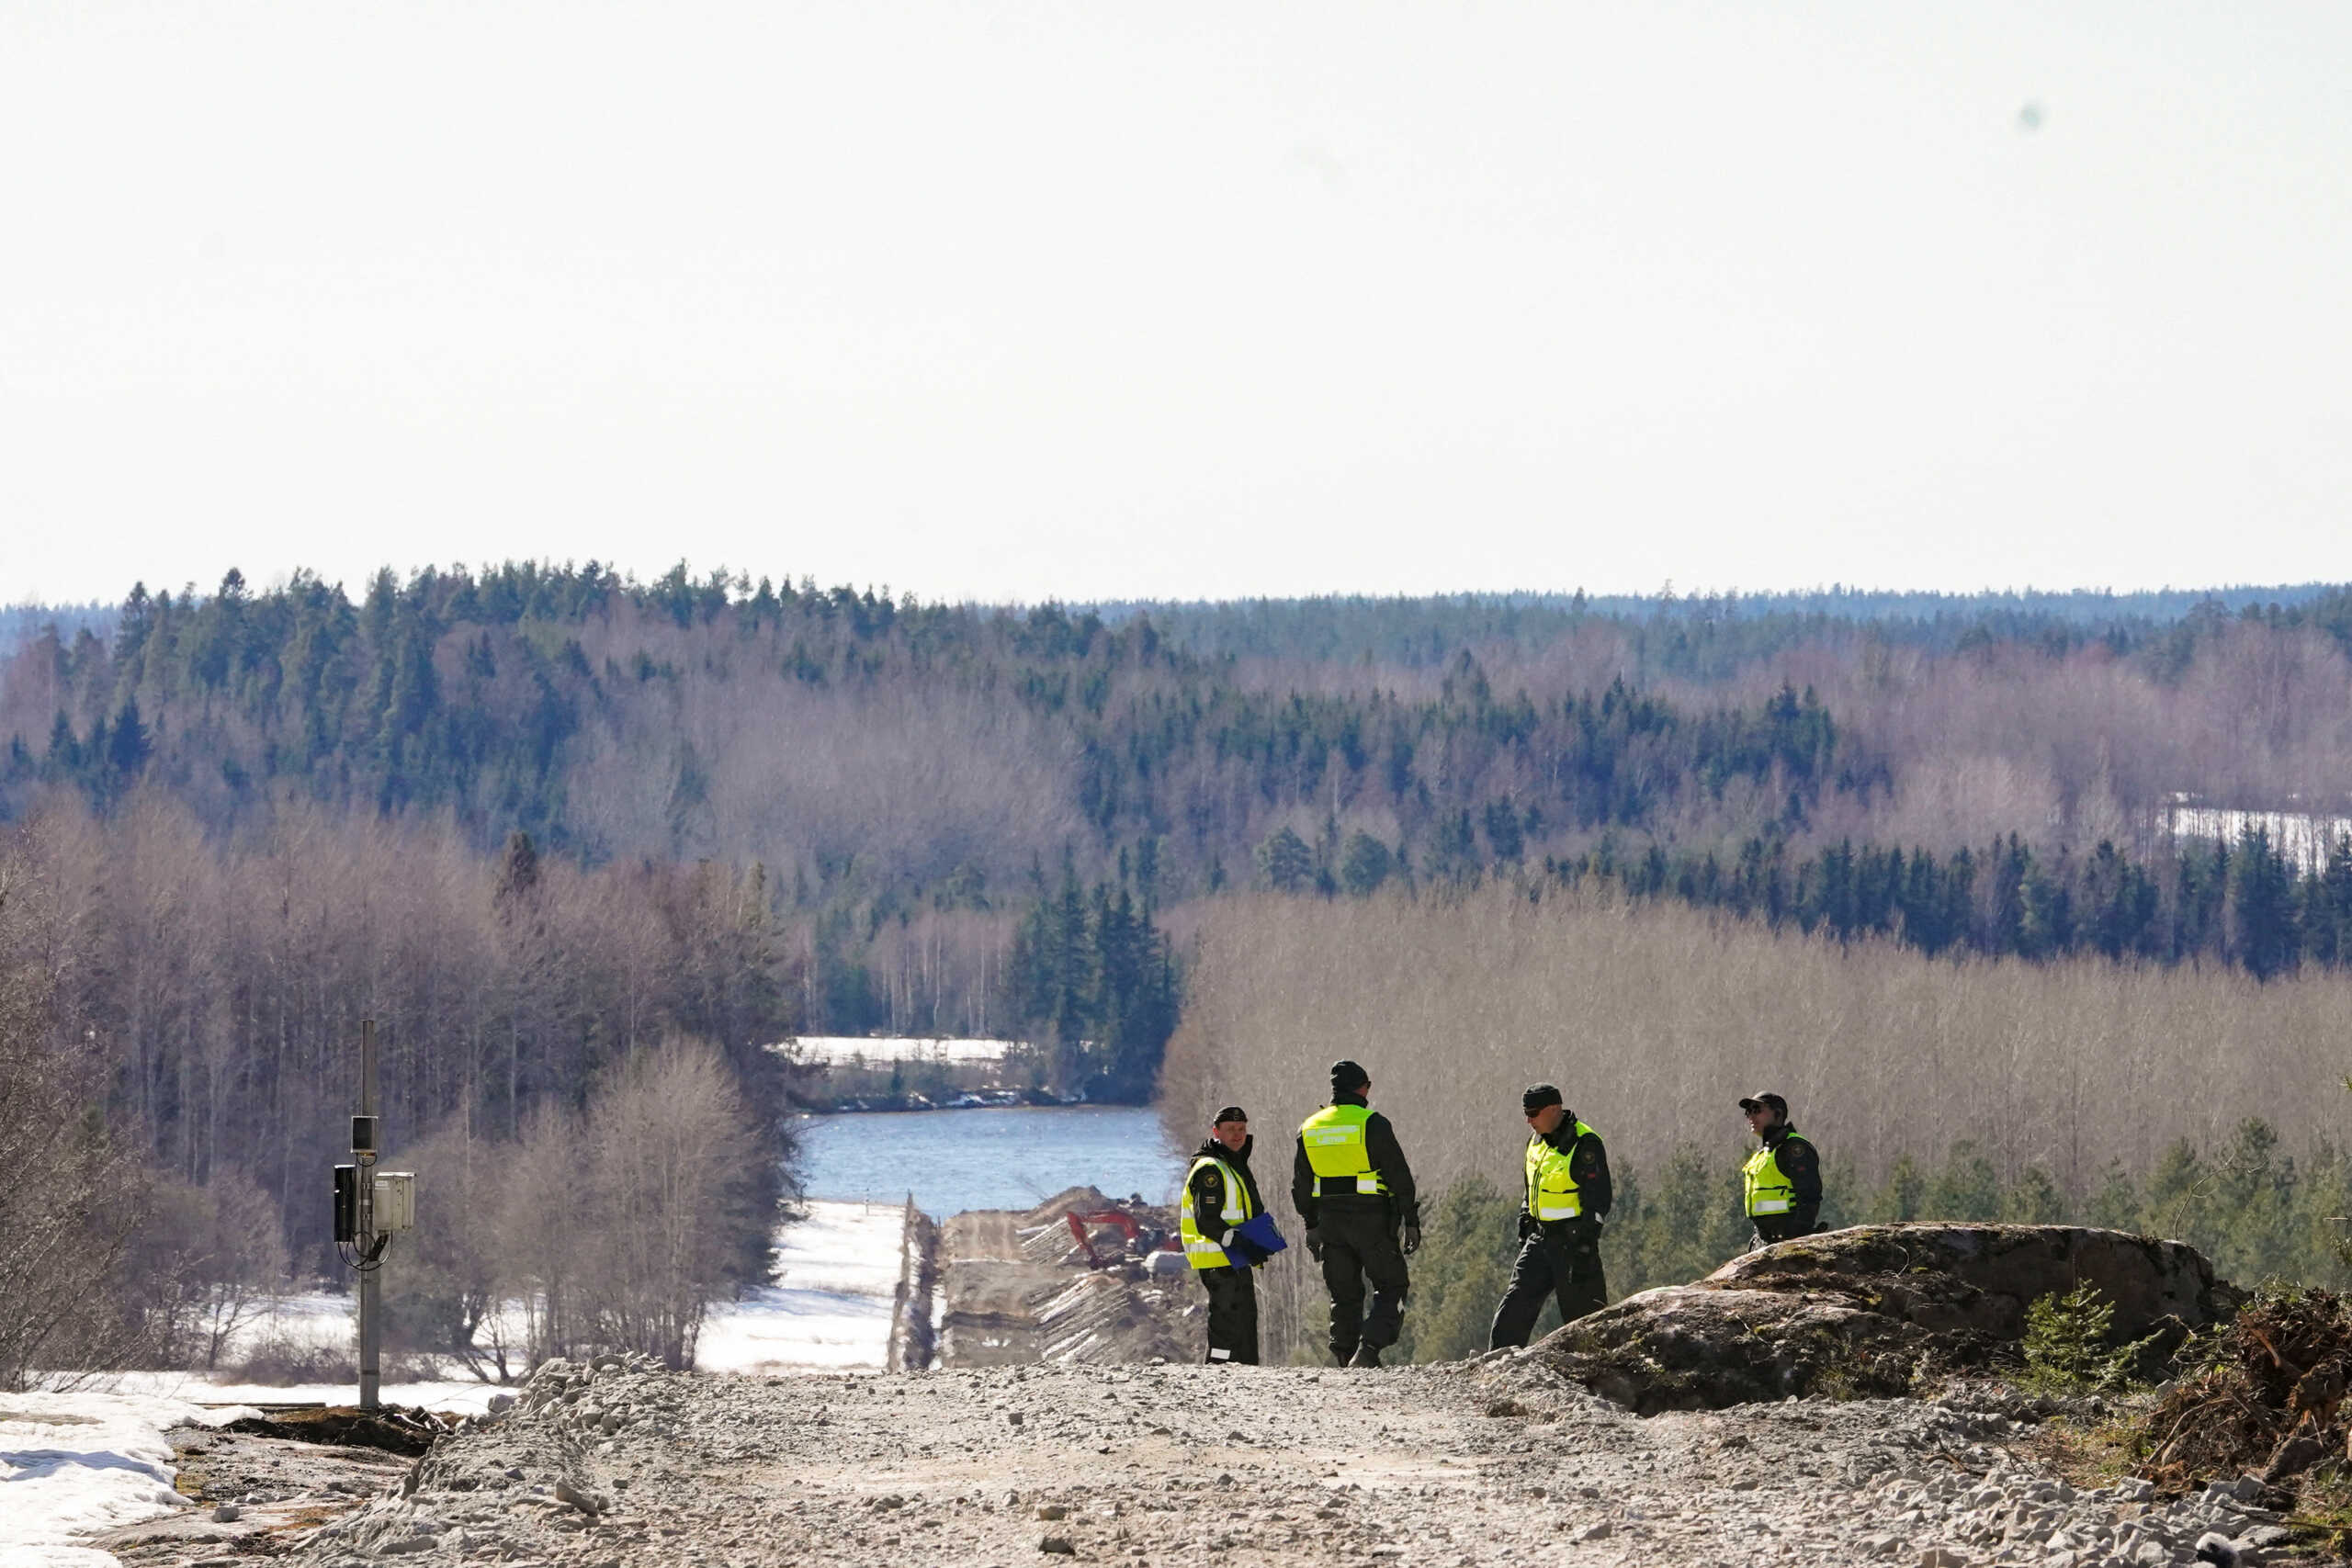 Φινλανδία: Άρχισε και αυτή να στήνει φράχτη στα νέα σύνορα του ΝΑΤΟ με τη Ρωσία